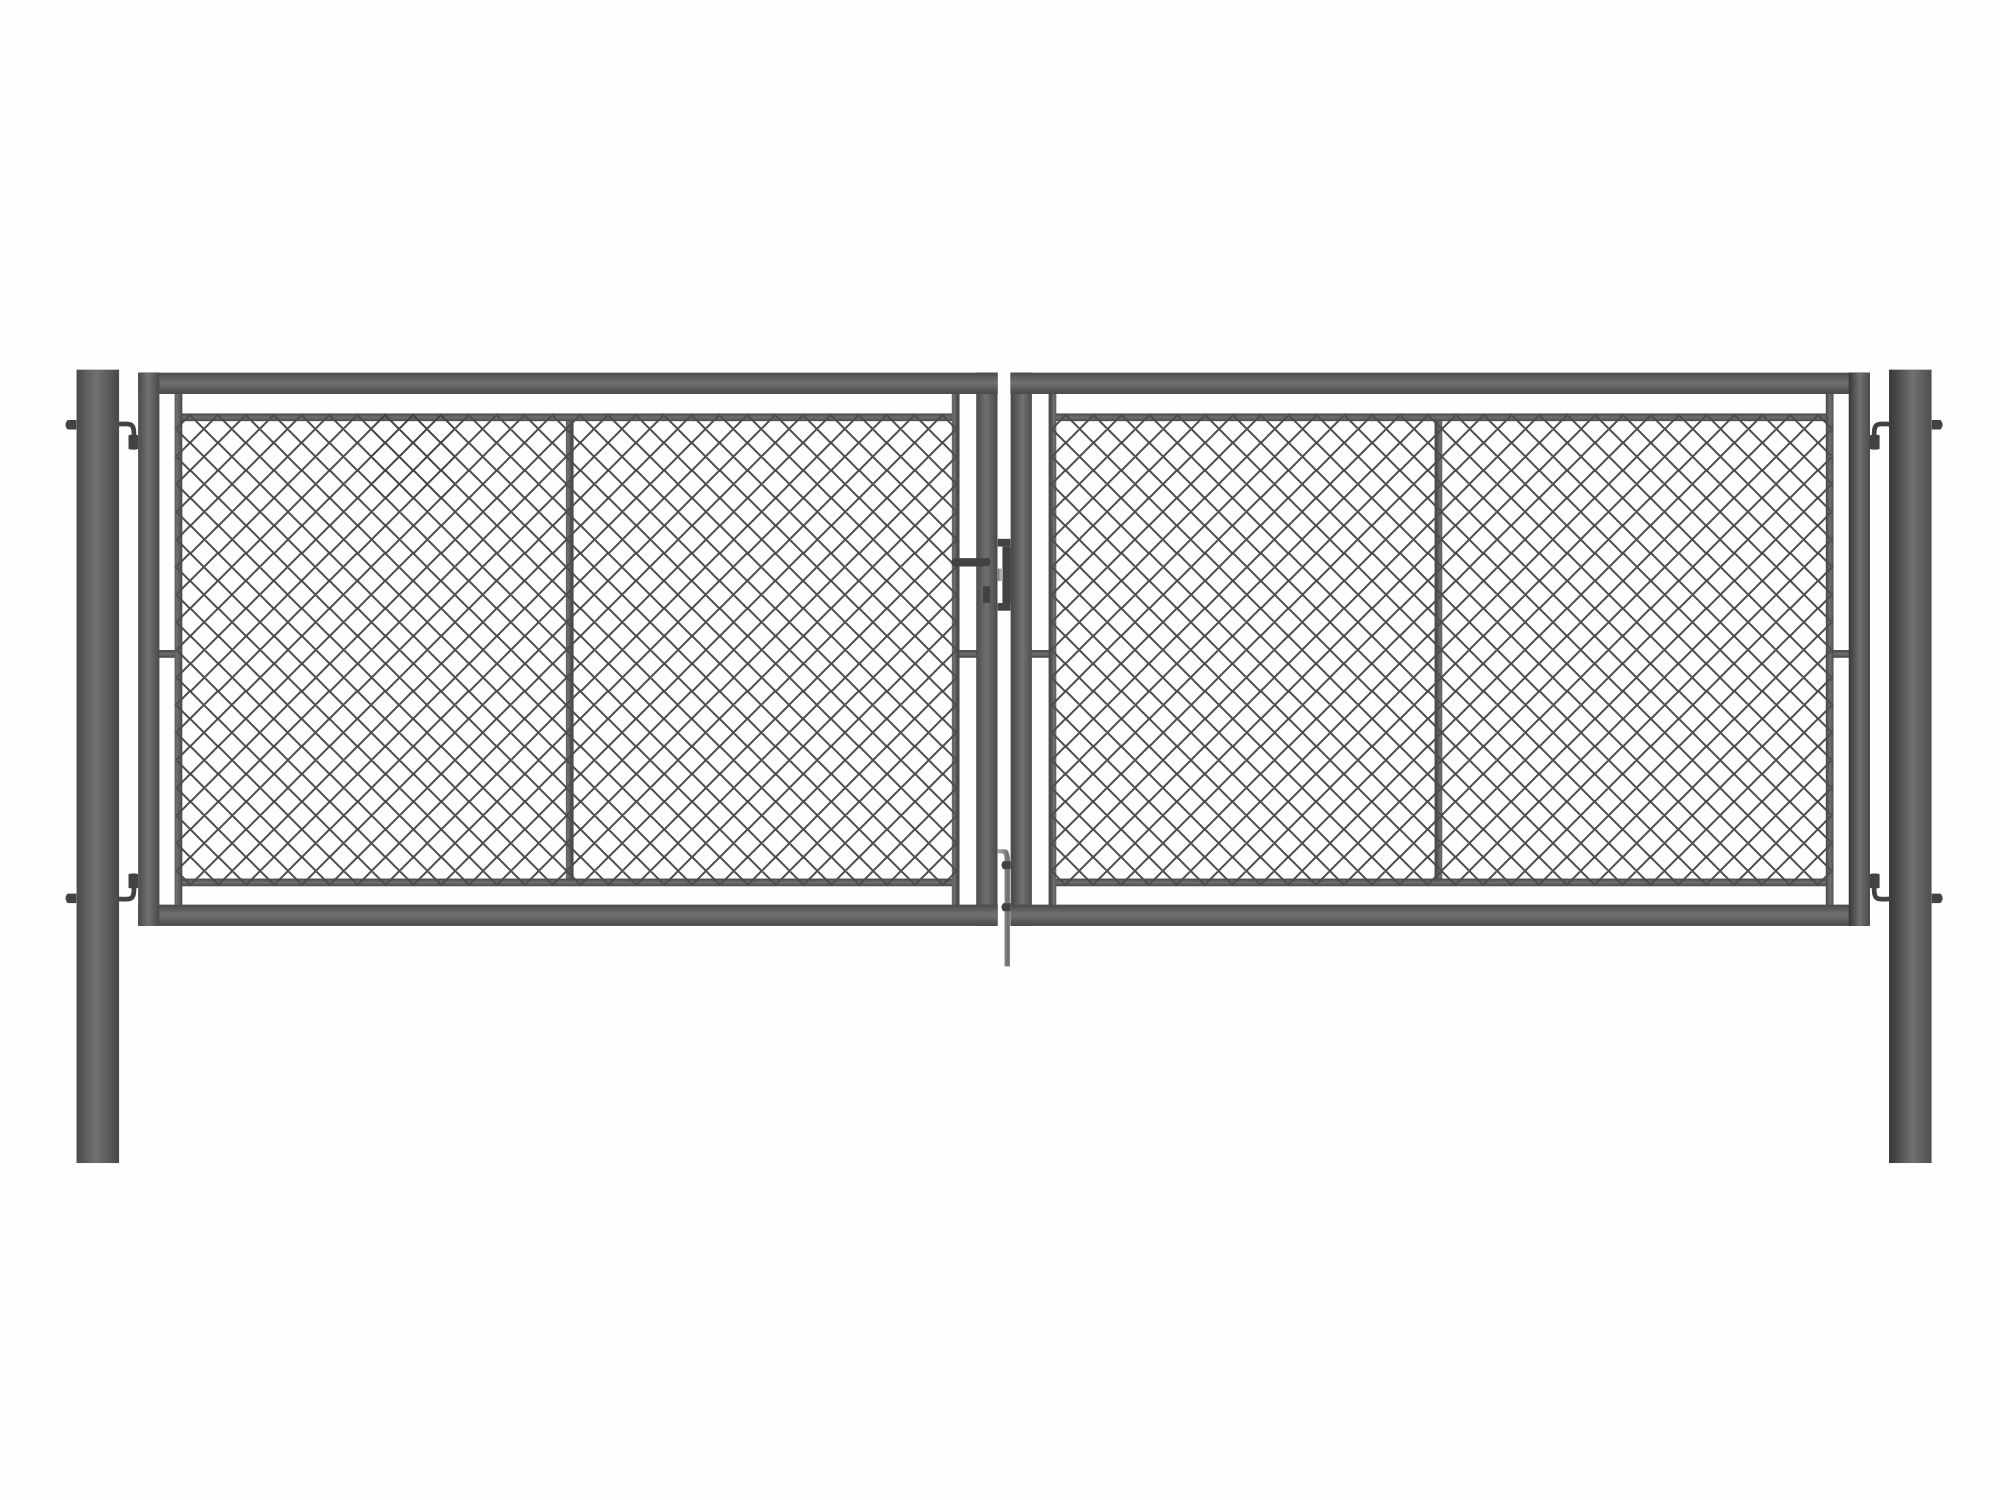 Brána zahradní dvoukřídlá antracit, výška 145 x 400 cm, FAB, s výplní klasického pletiva PLOTY Sklad5 9887 535